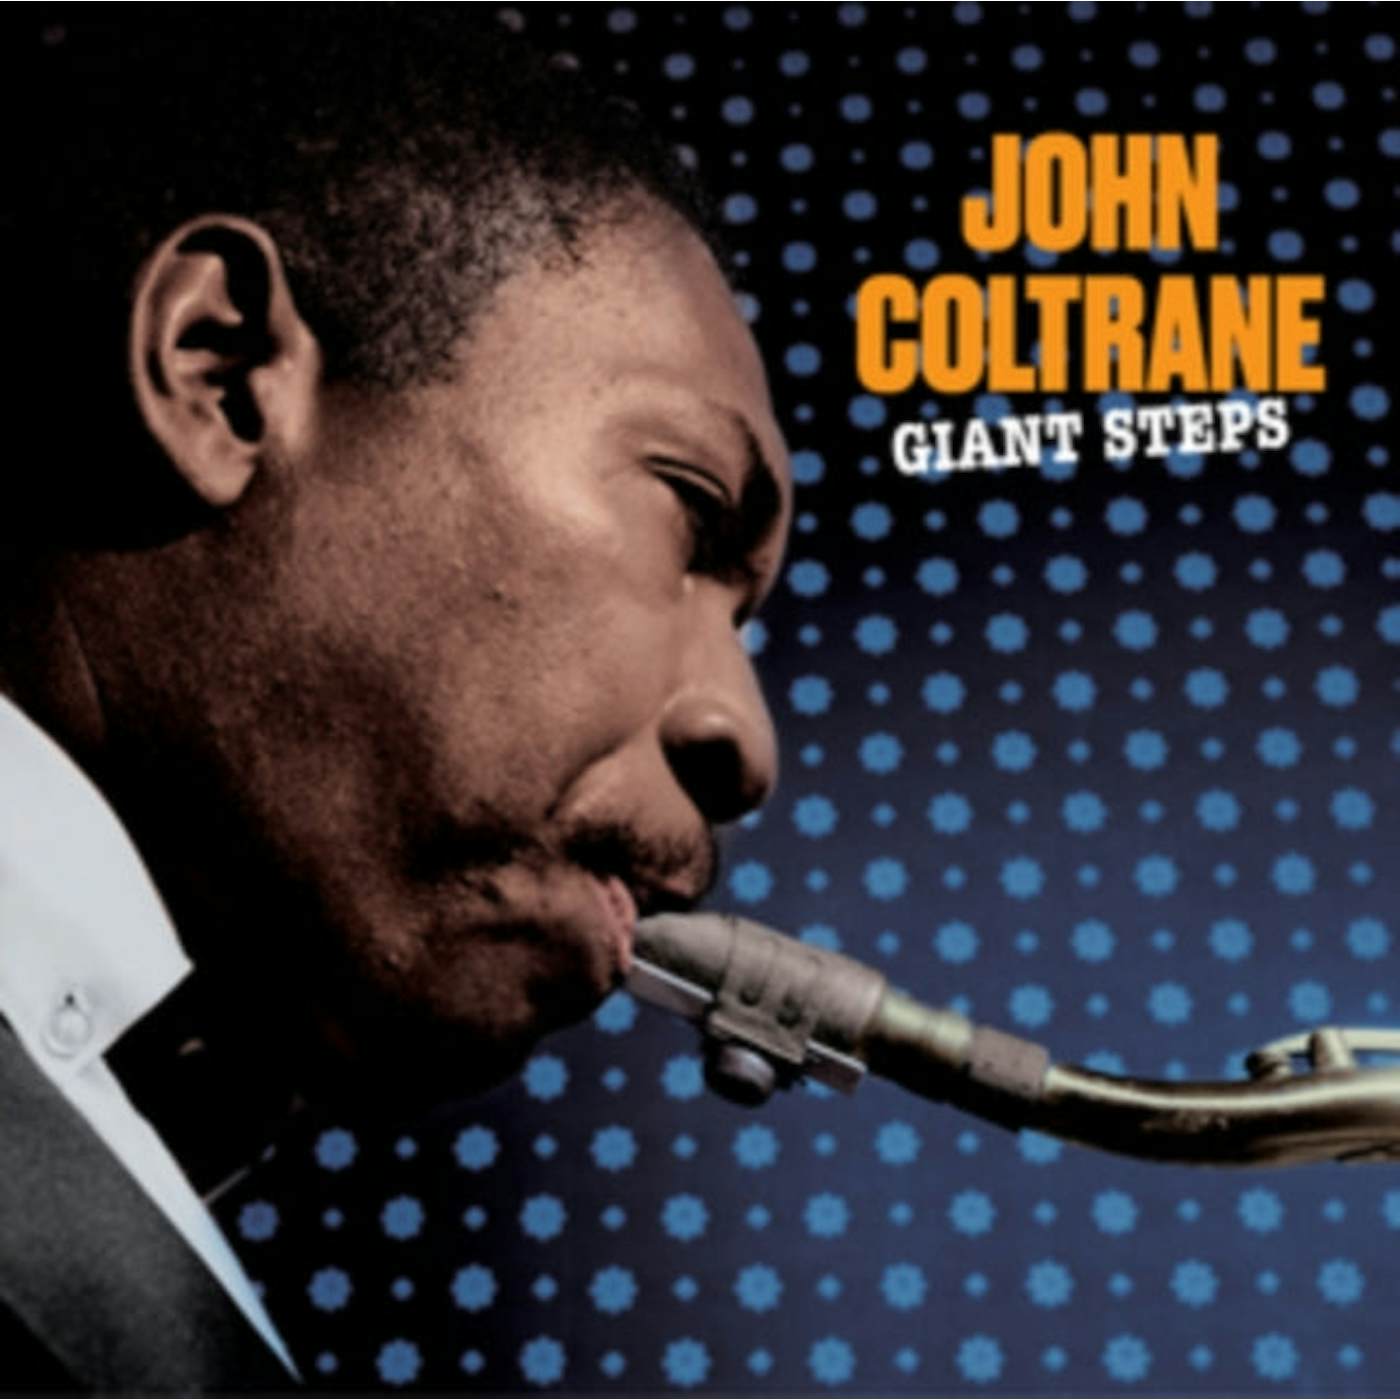 John Coltrane LP Vinyl Record - Giant Steps (+1 Bonus Track) (Solid Blue Vinyl)